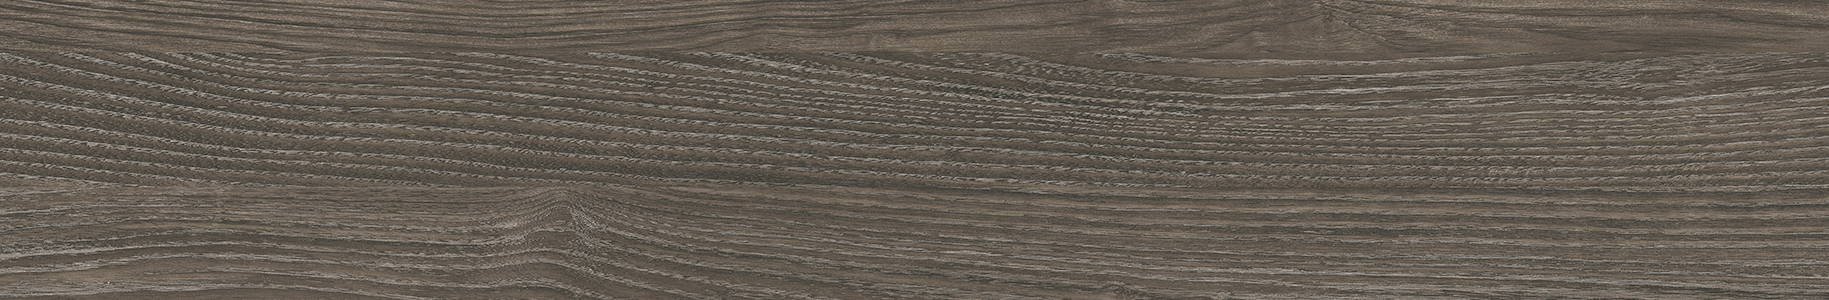 EW1522-15 川島織物セルコン 床タイル エグザウッド アンゴラアッシュ 川島織物セルコン フロアタイル